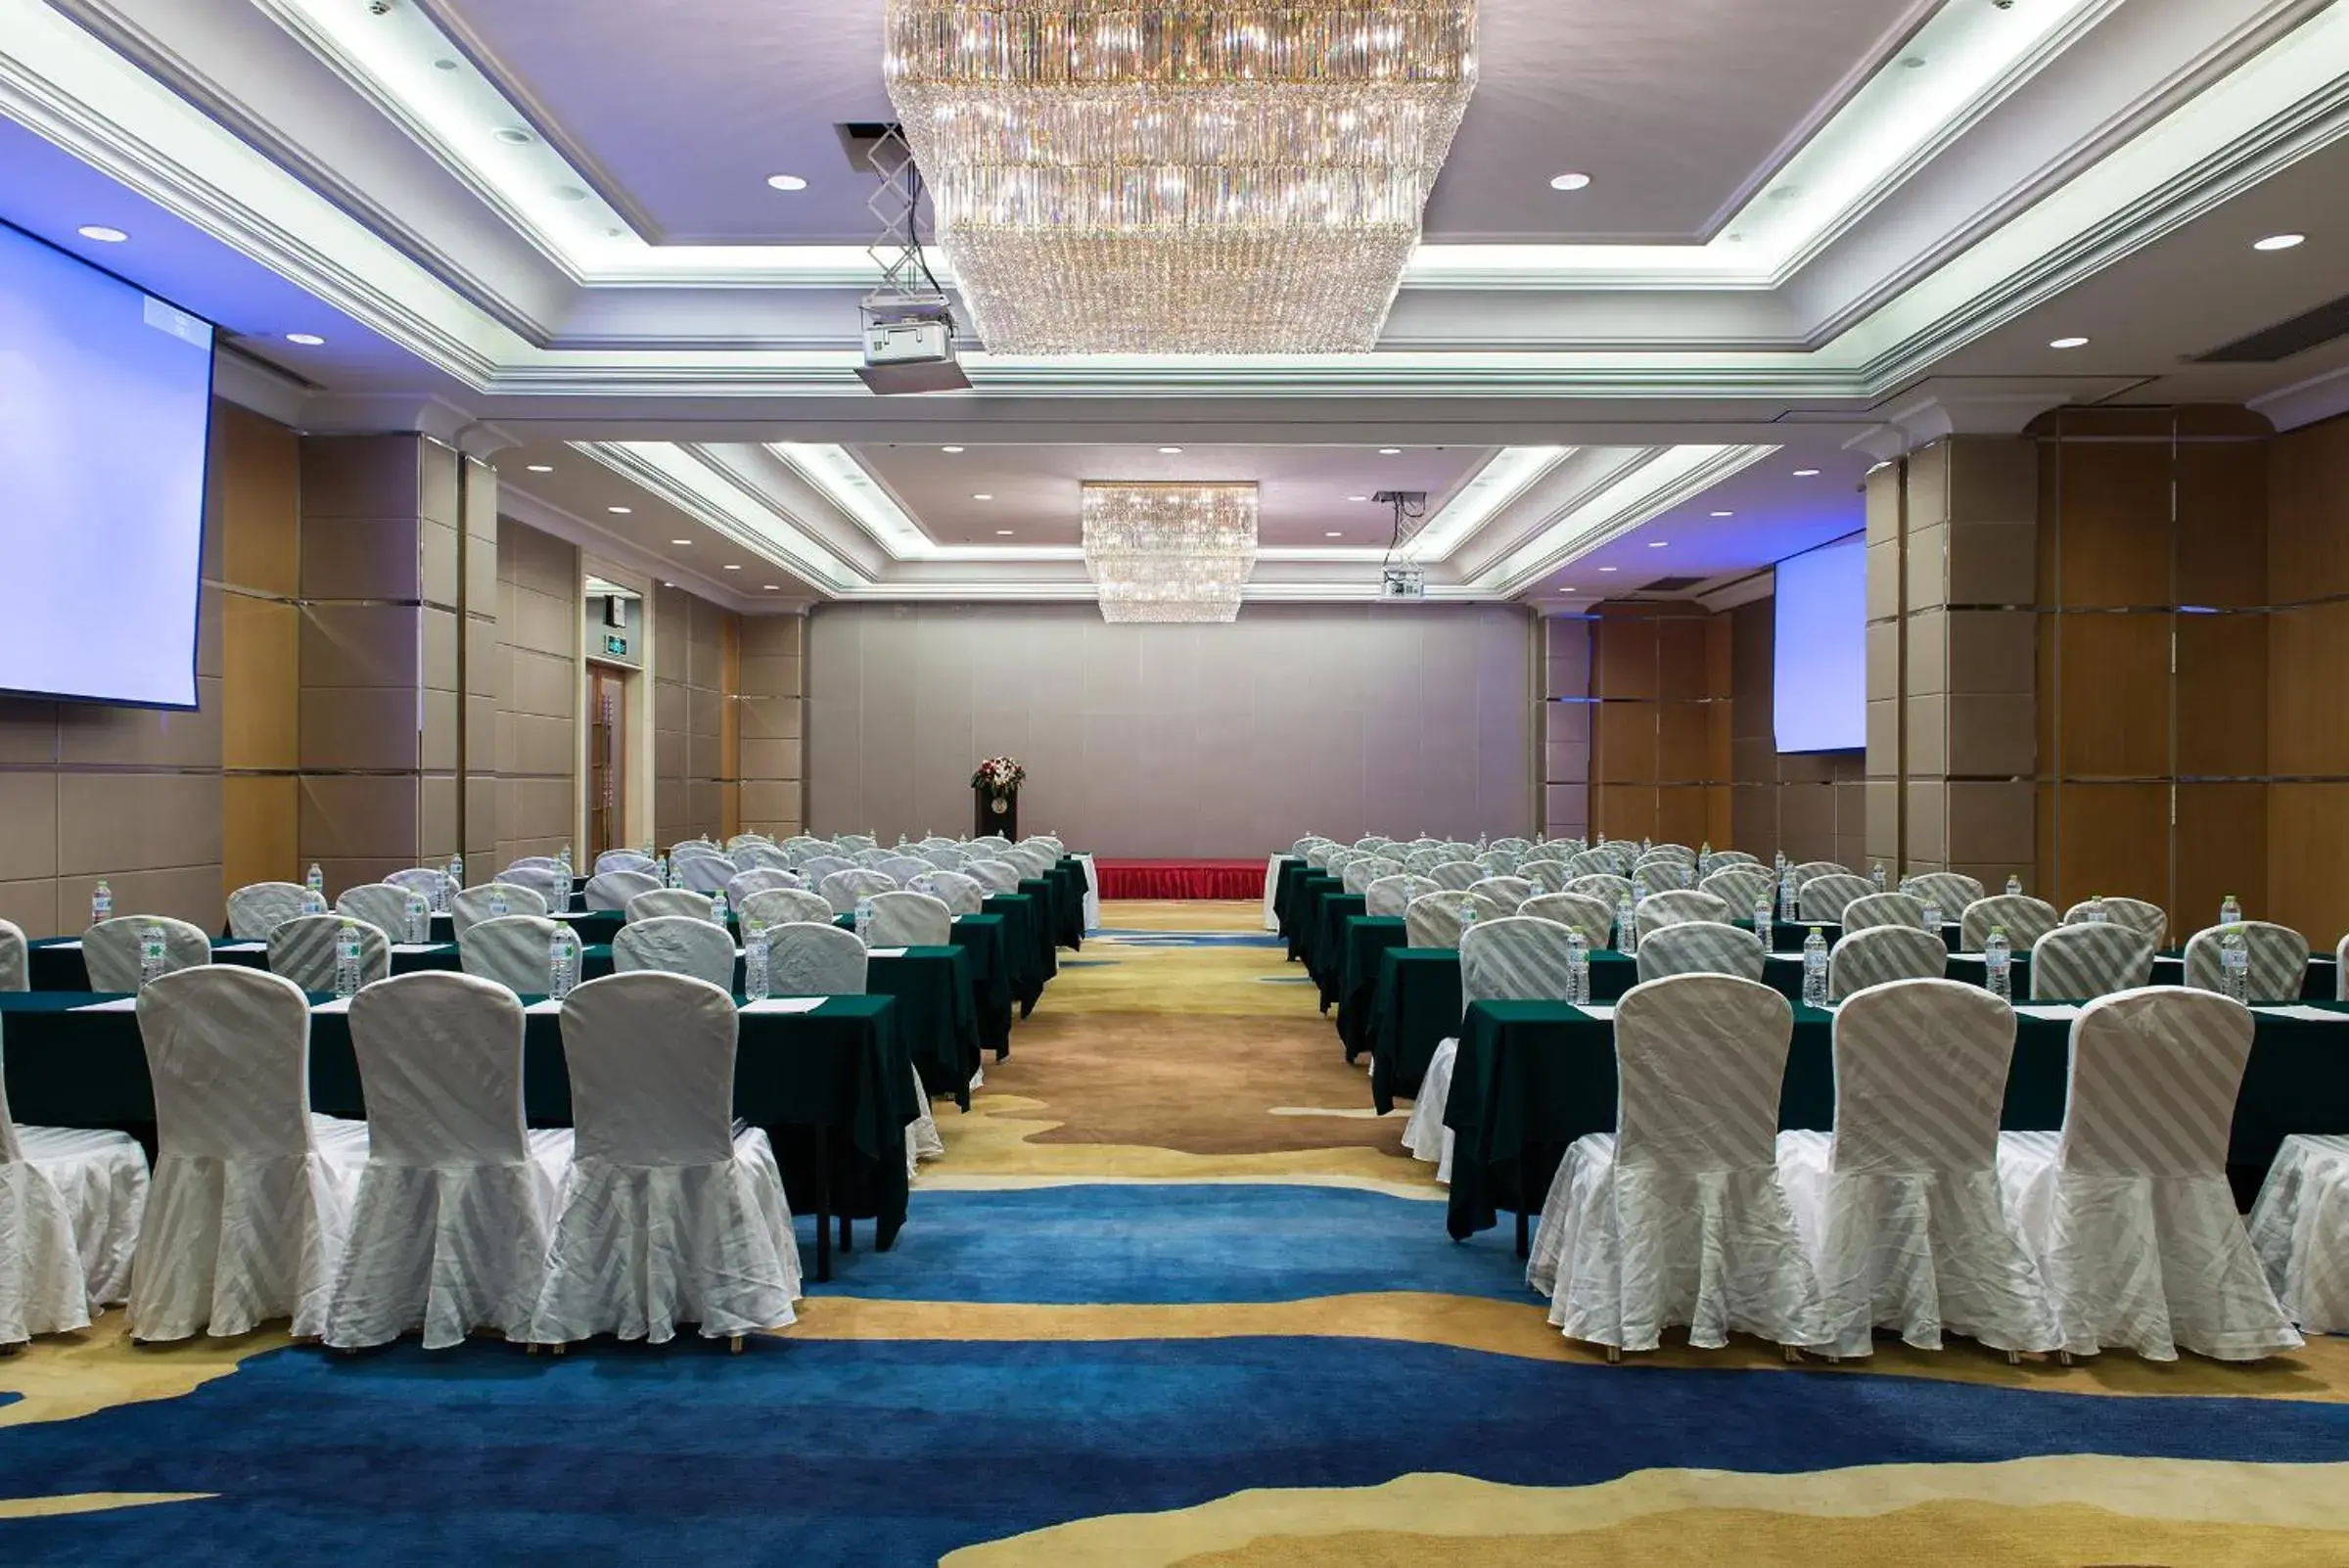 Banquet/Function facilities in Ramada Plaza Optics Valley Hotel Wuhan (Best of Ramada Worldwide)